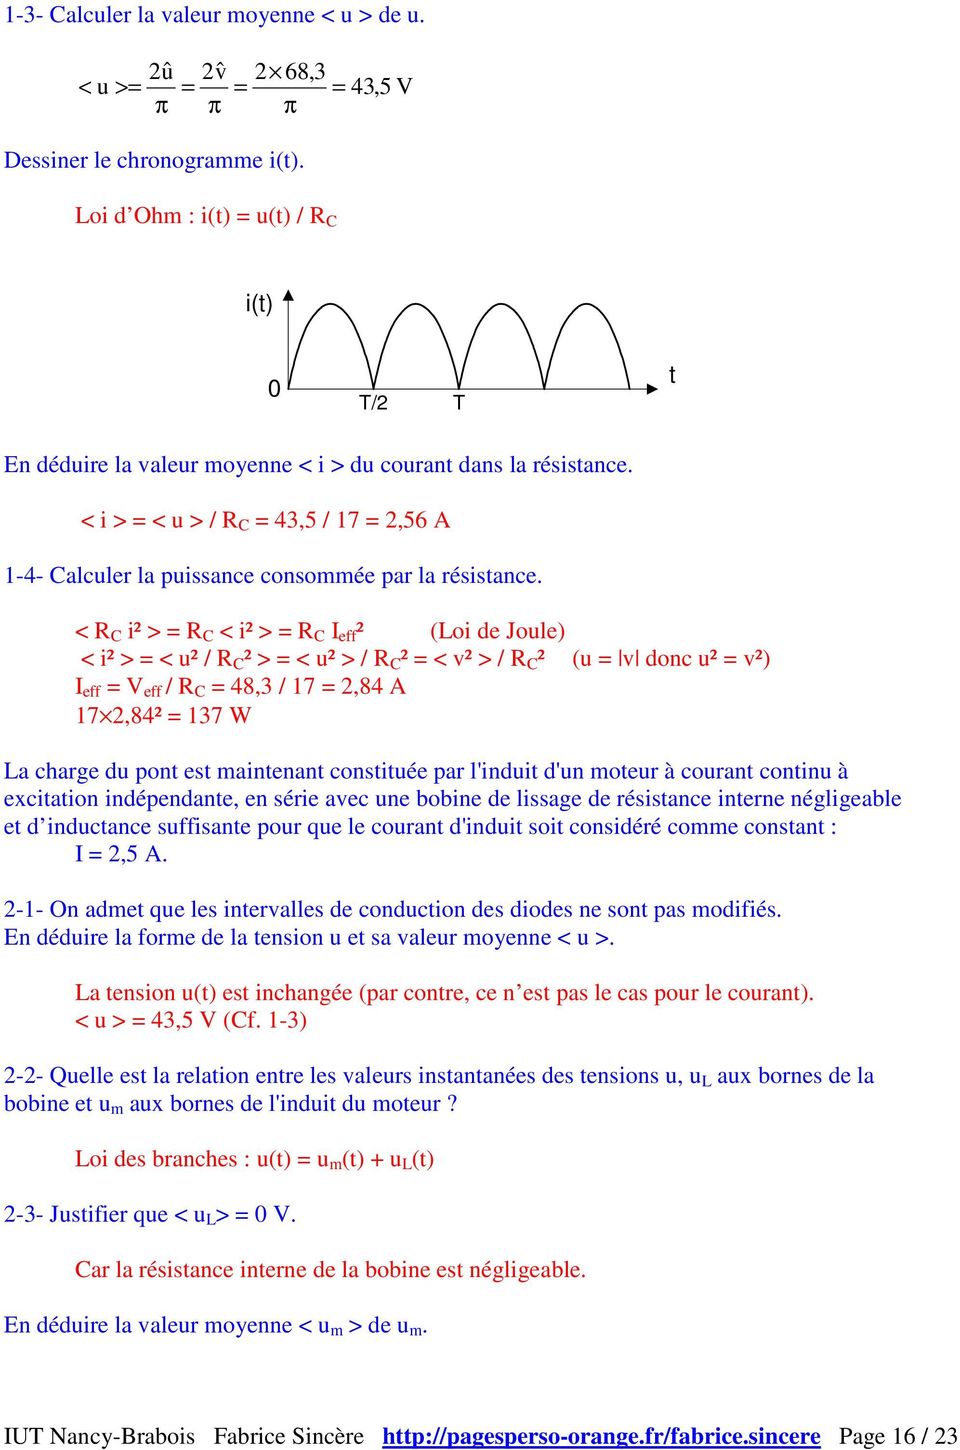 < R C i² > = R C < i² > = R C I eff ² (Loi de Joule) < i² > = < u² / R C ² > = < u² > / R C ² = < v² > / R C ² (u = v donc u² = v²) I eff = V eff / R C = 48,3 / 17 = 2,84 A 17 2,84² = 137 W La charge